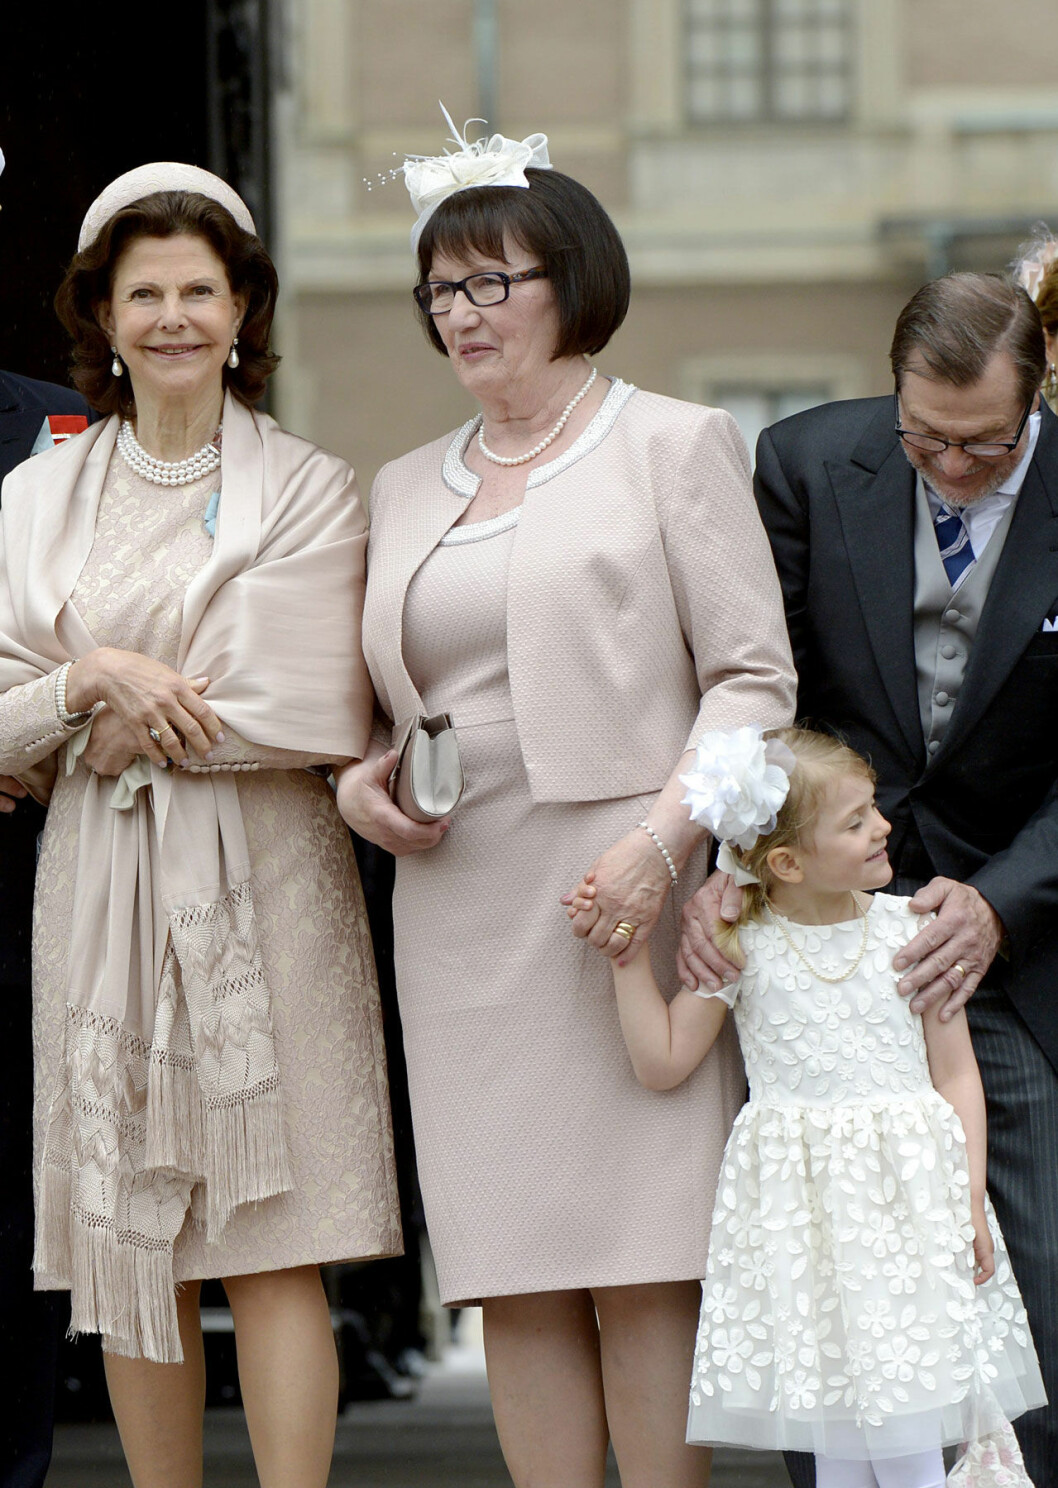 Drottning Silvia och Ewa Westling tillsammans med prinsessan Estelle.